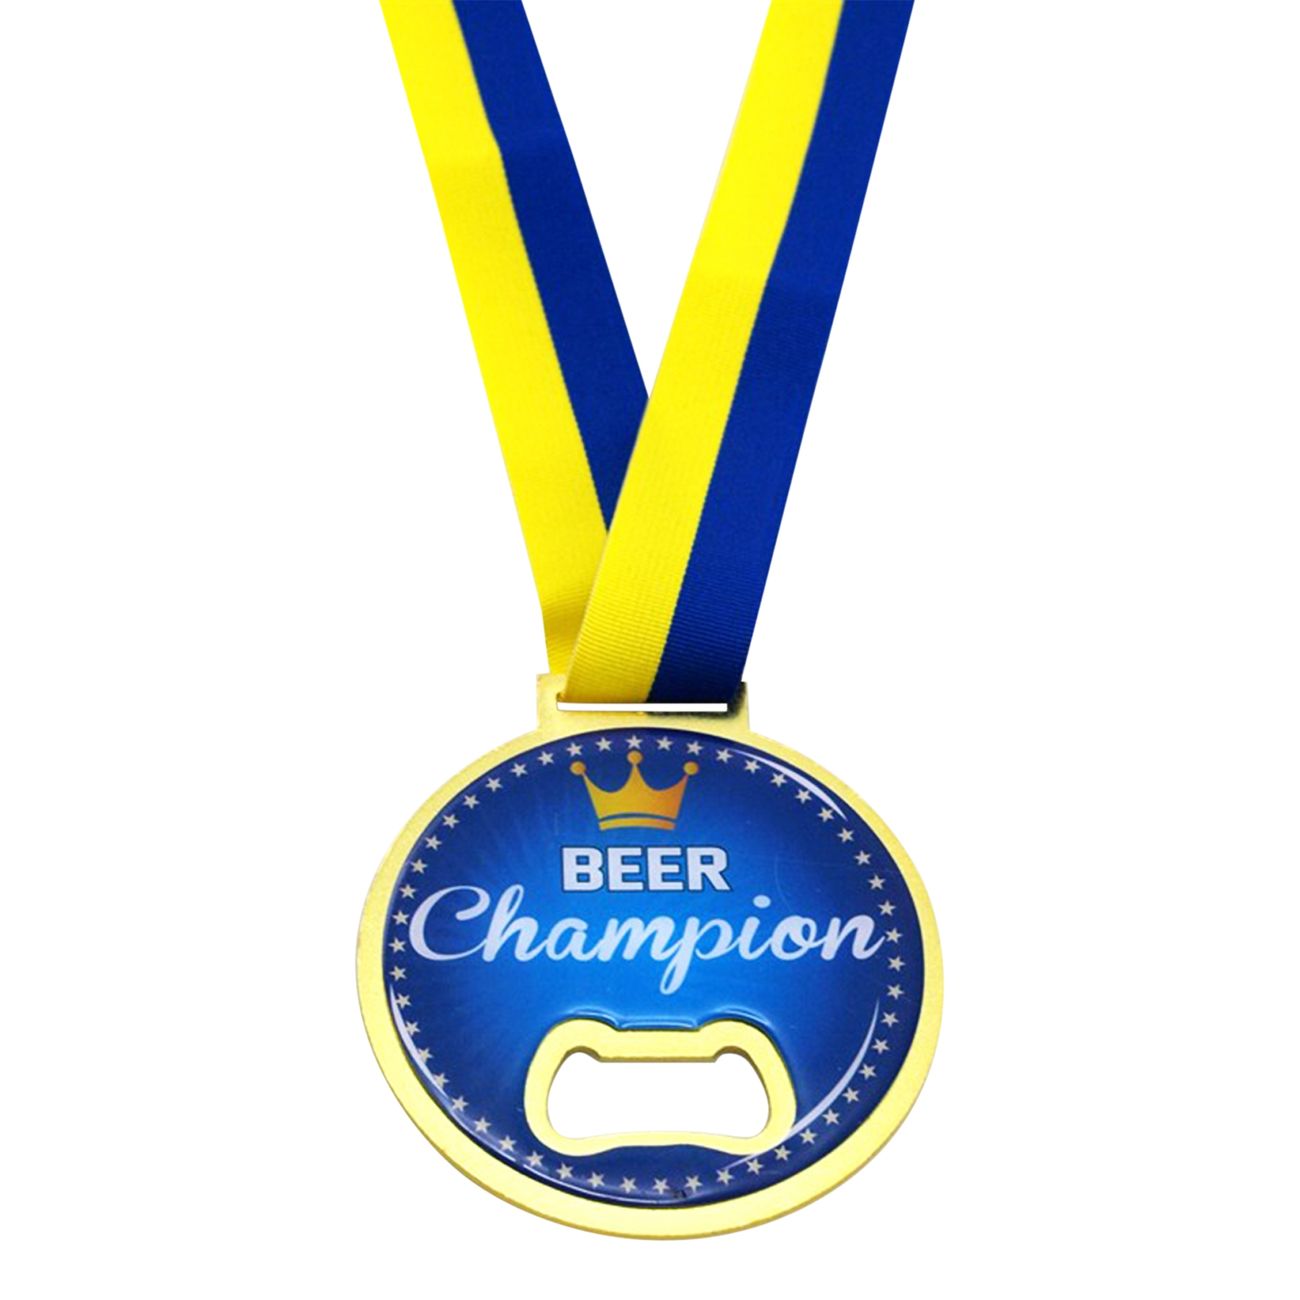 kapsyloppnare-beer-champion-med-blagult-band-91947-1